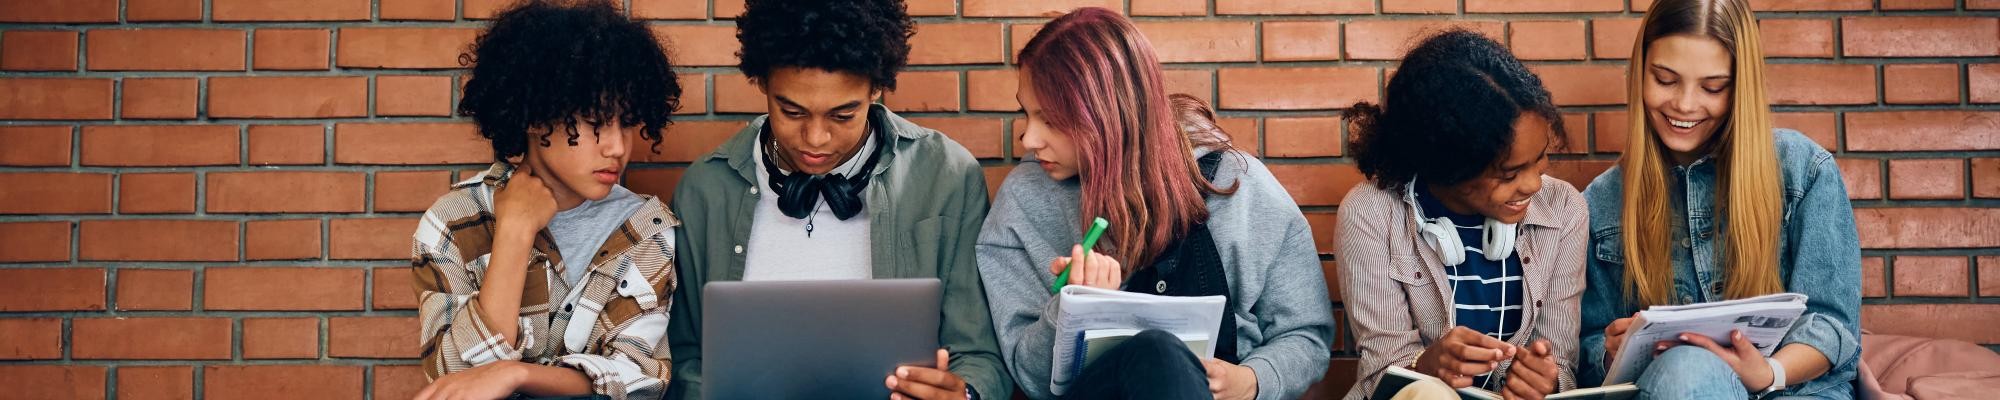 Jugendliche mit Laptop und Heften sitzen nebeneinander